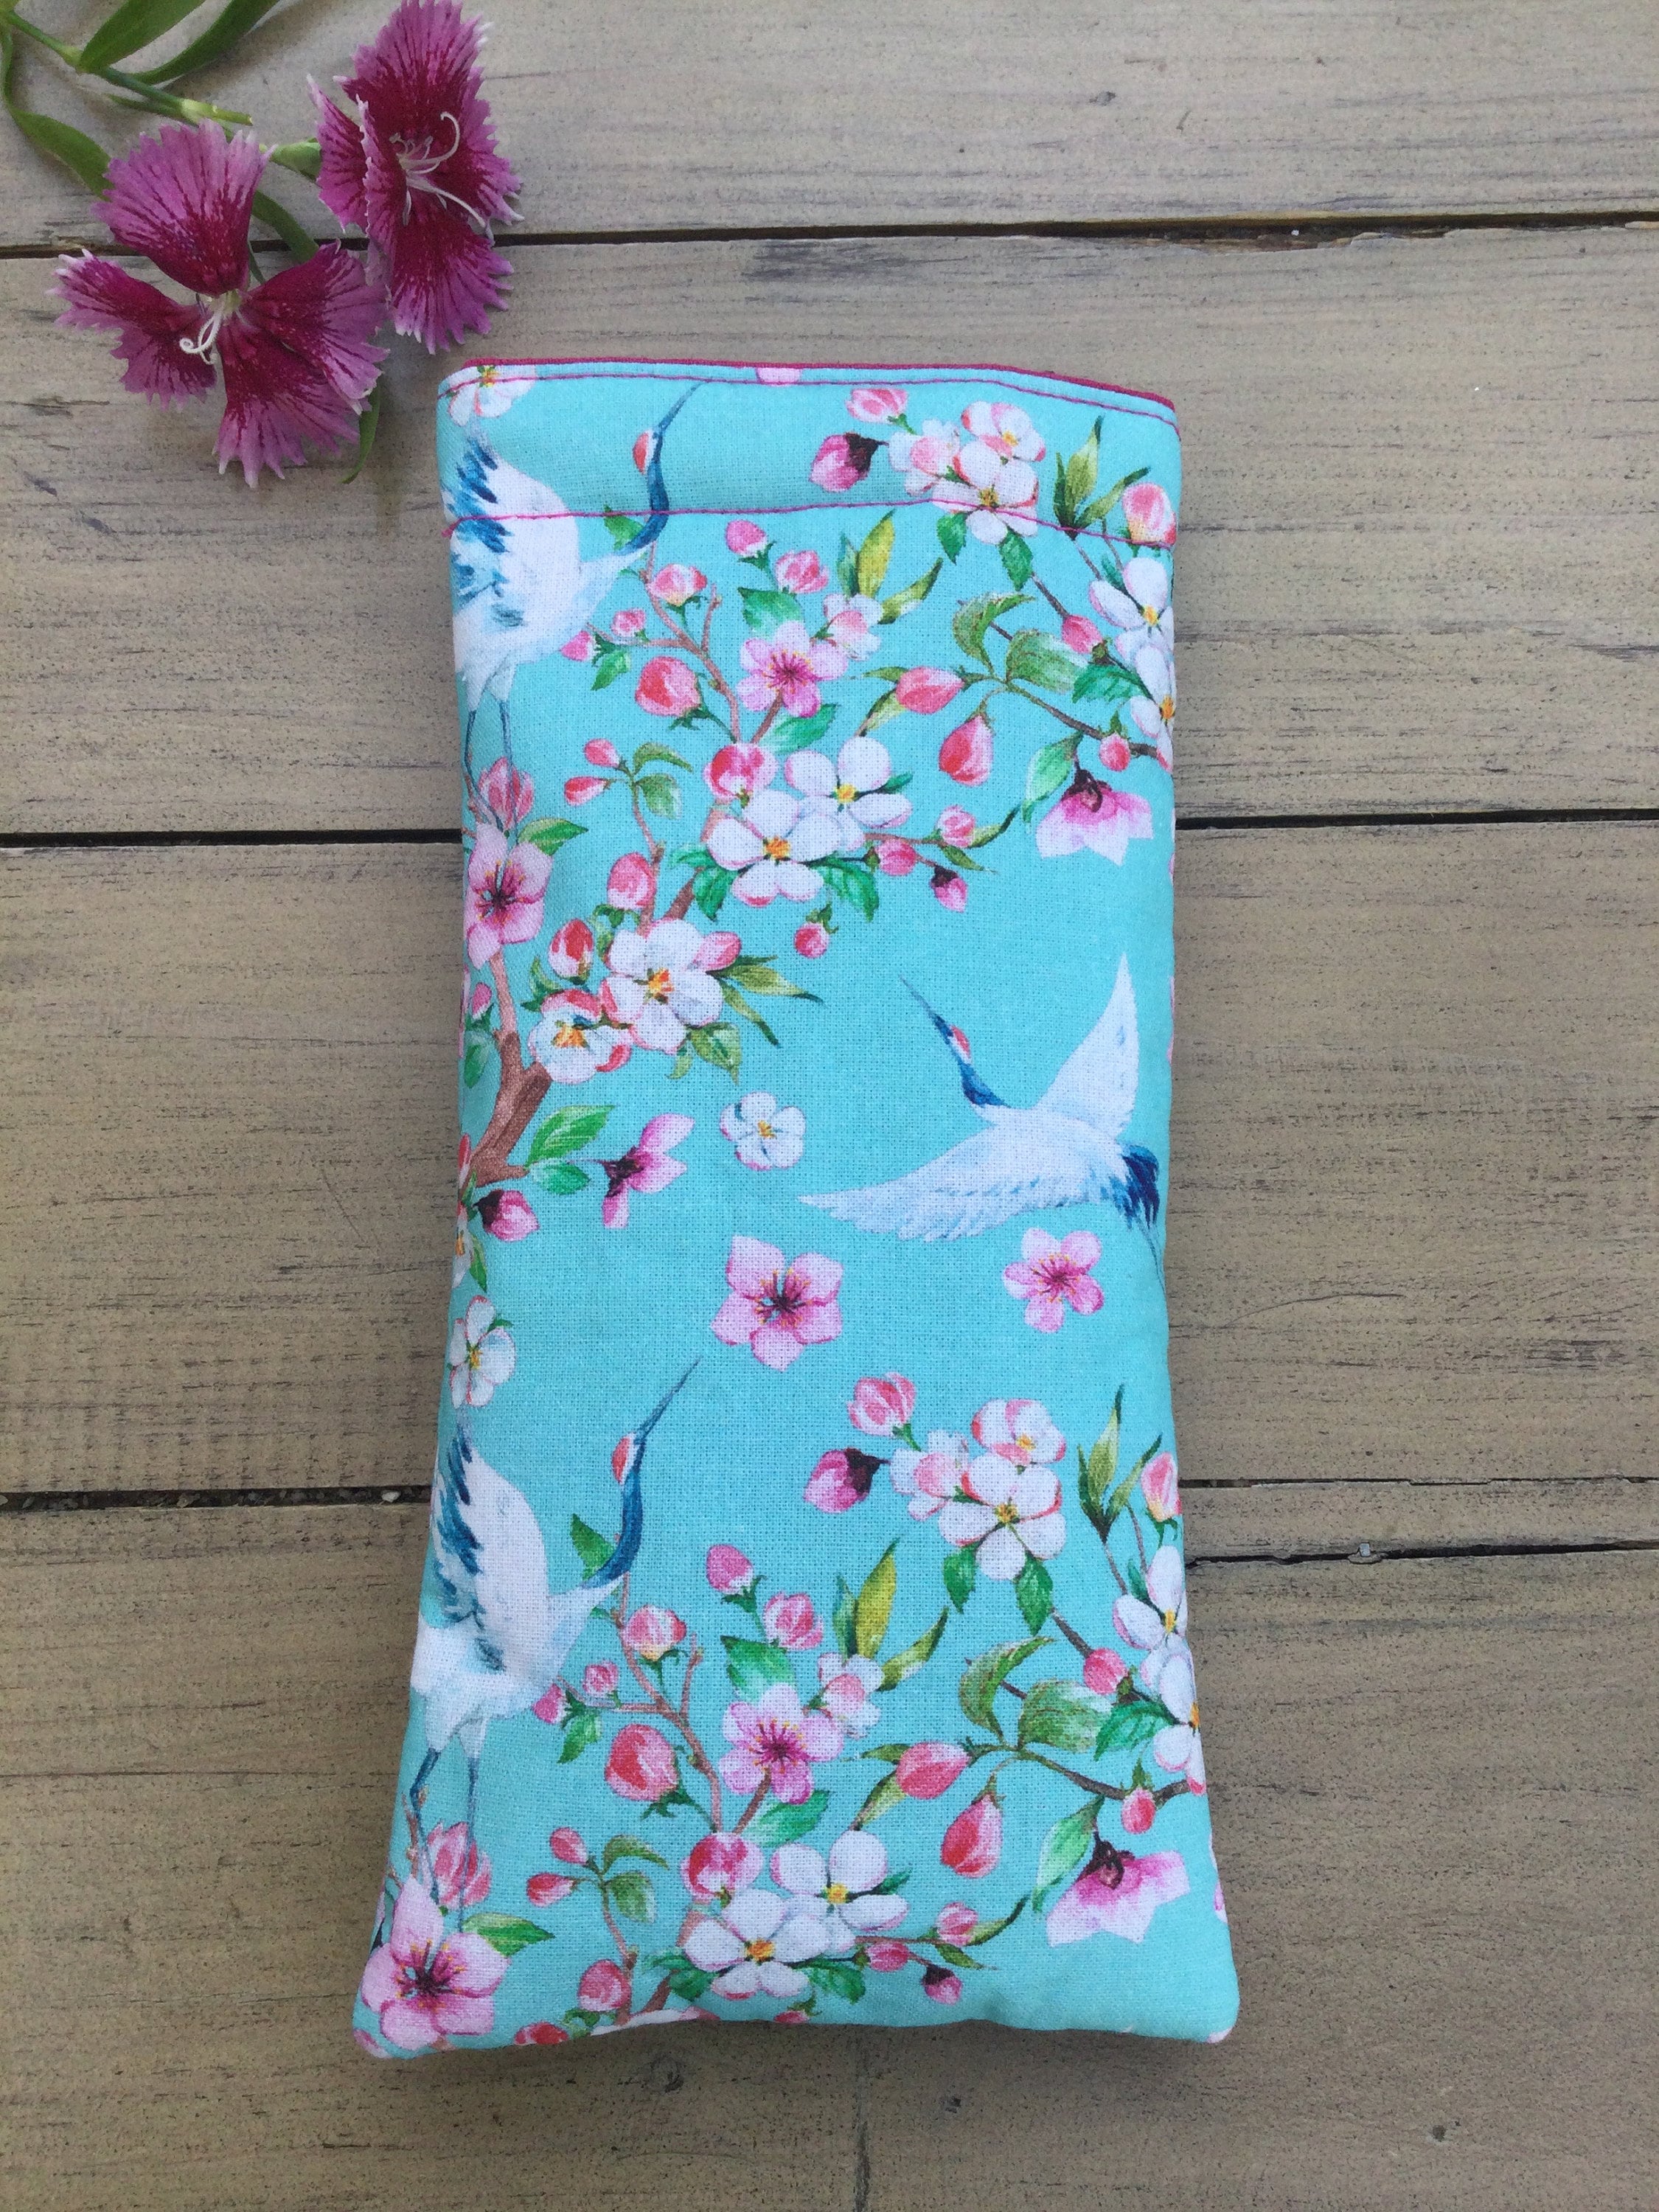 Cherry Blossom Pencil Case / Flowery Pen Case / Floral Pencil Pouch /  Flower Pen Pouch / Zipper Bag, Pouch / Makeup Bag / School Supplies 